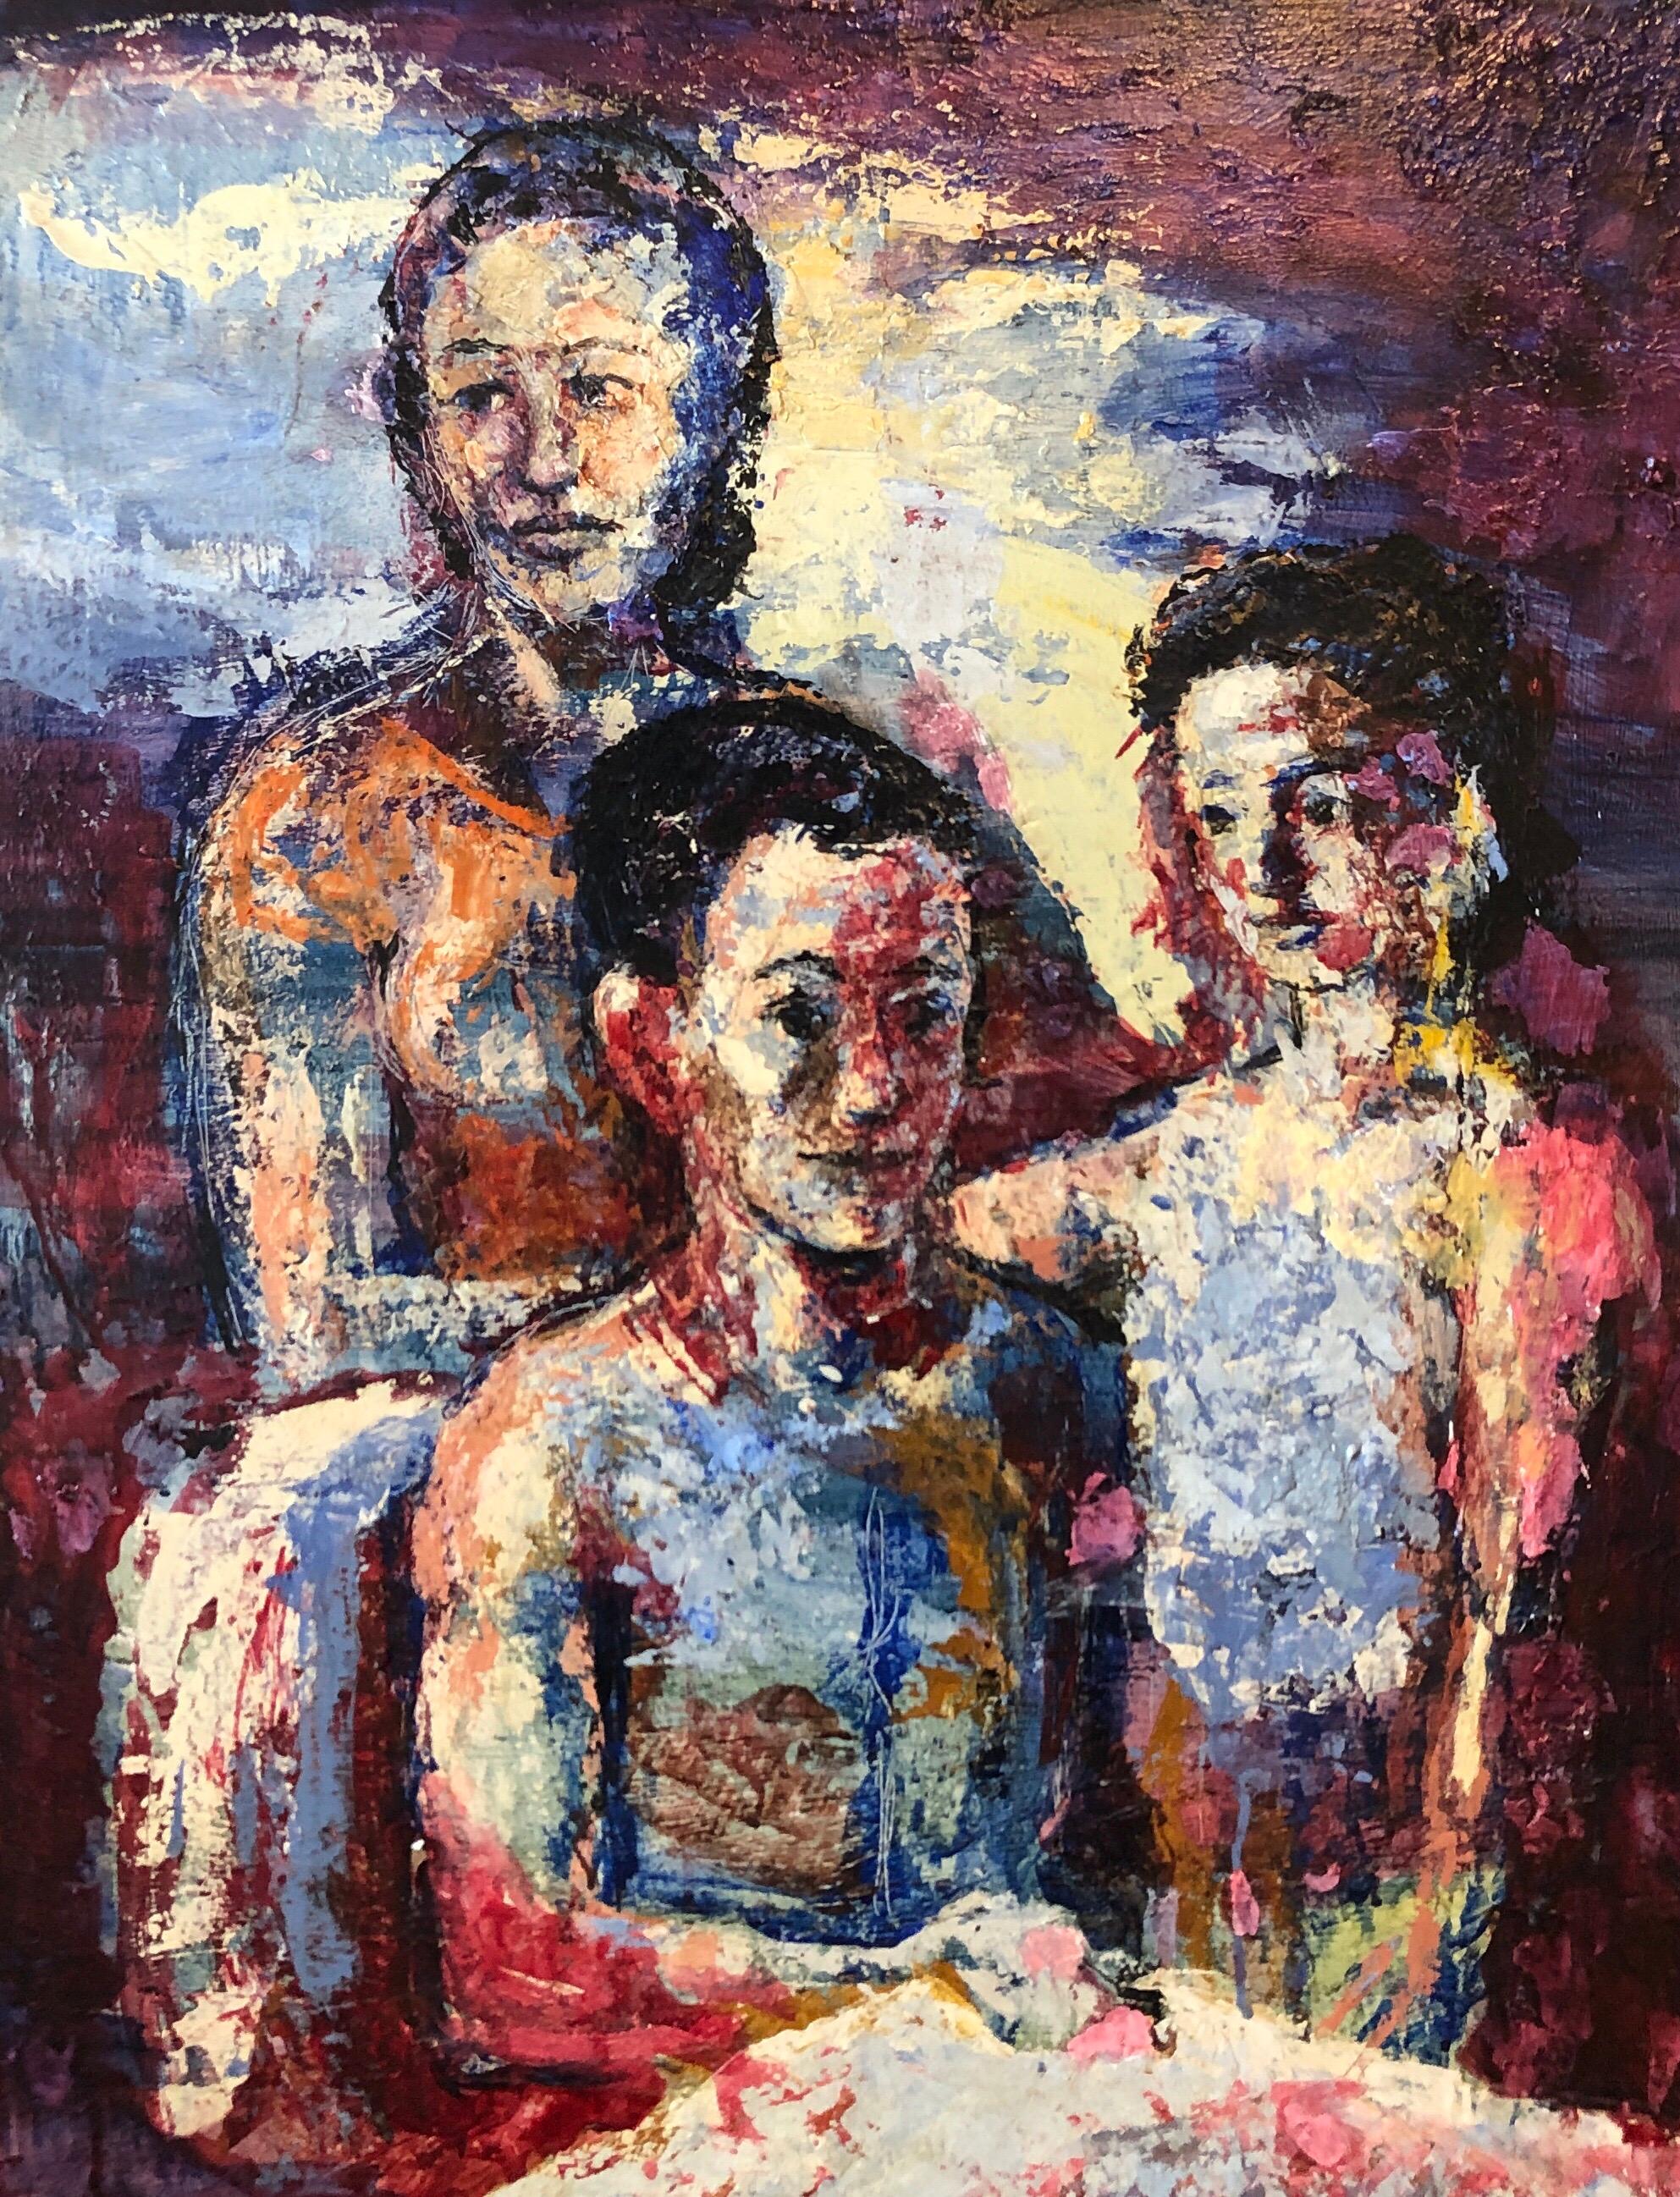 Portrait de famille surréaliste, grande peinture à l'huile surréaliste Mère, enfants, néo-surréalisme - Surréalisme Painting par Hank Laventhol